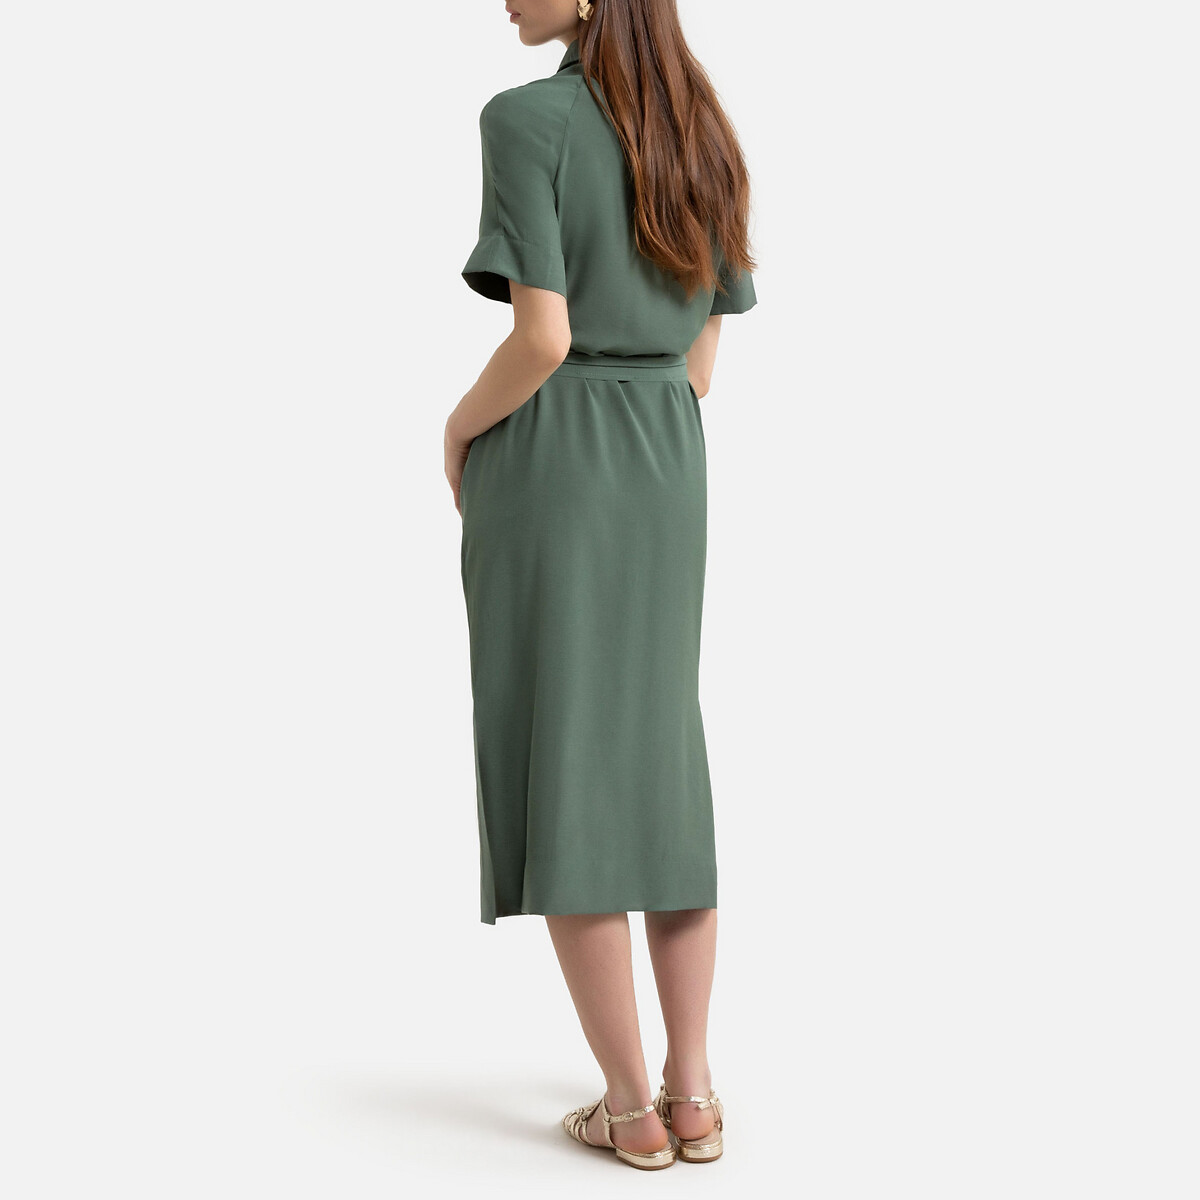 Платье La Redoute На пуговицах с ремешком 40 (FR) - 46 (RUS) зеленый, размер 40 (FR) - 46 (RUS) На пуговицах с ремешком 40 (FR) - 46 (RUS) зеленый - фото 3